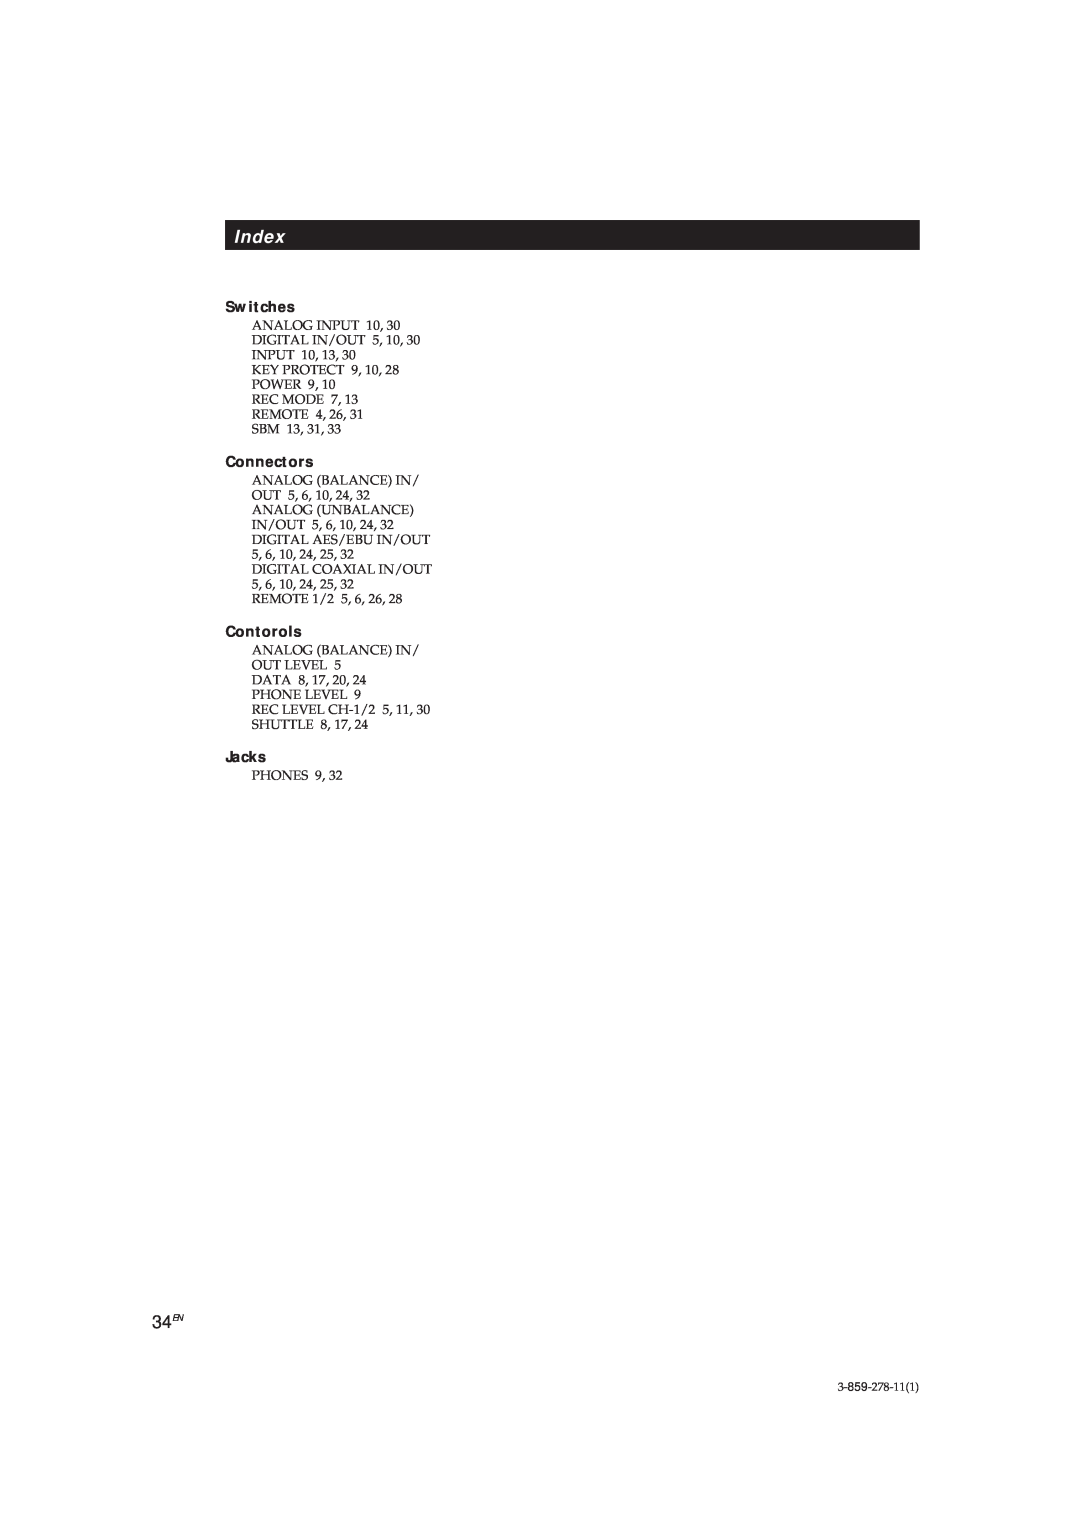 Sony PCM-R500, PCM-R700 manual Index, 34EN, Switches, Connectors, Contorols, Jacks 